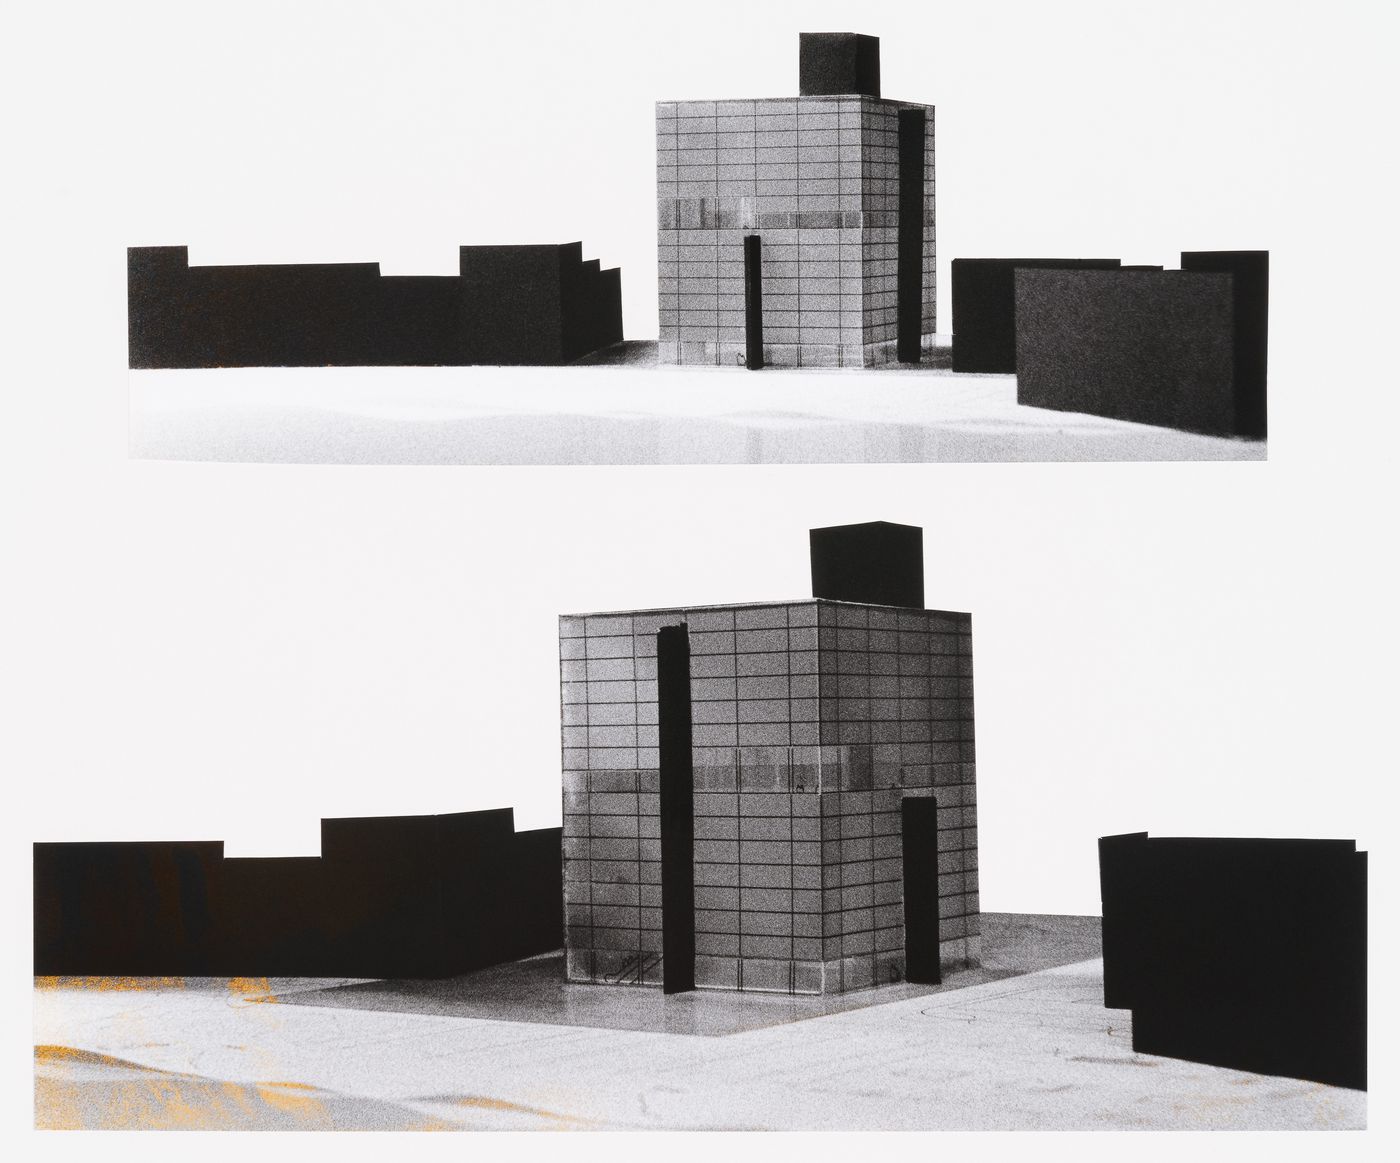 View of a model, Concurso Zephyr: torres mixtas autosufficientes, Madrid, Spain